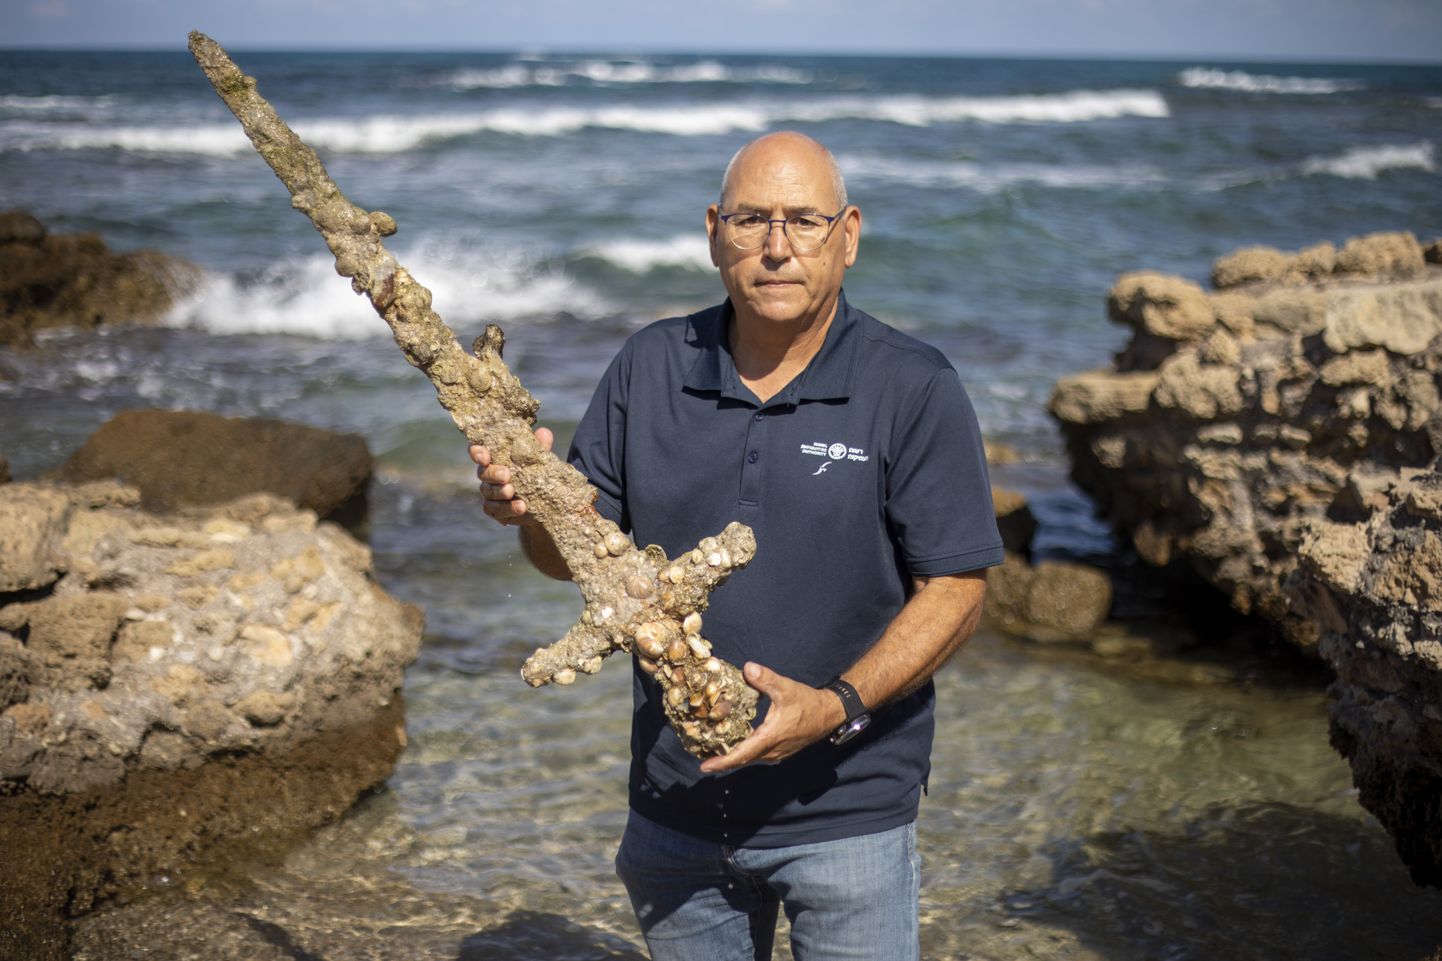 Iisraeli antiigiameti merearheoloogia üksuse direktor Jacob Sharvit hoidmas 19. oktoobril 2021 Iisraelis Vahemere sadamas Cesareas käes meetripikkust mõõka, mis ekspertide sõnul pärineb ristisõdijate ajast